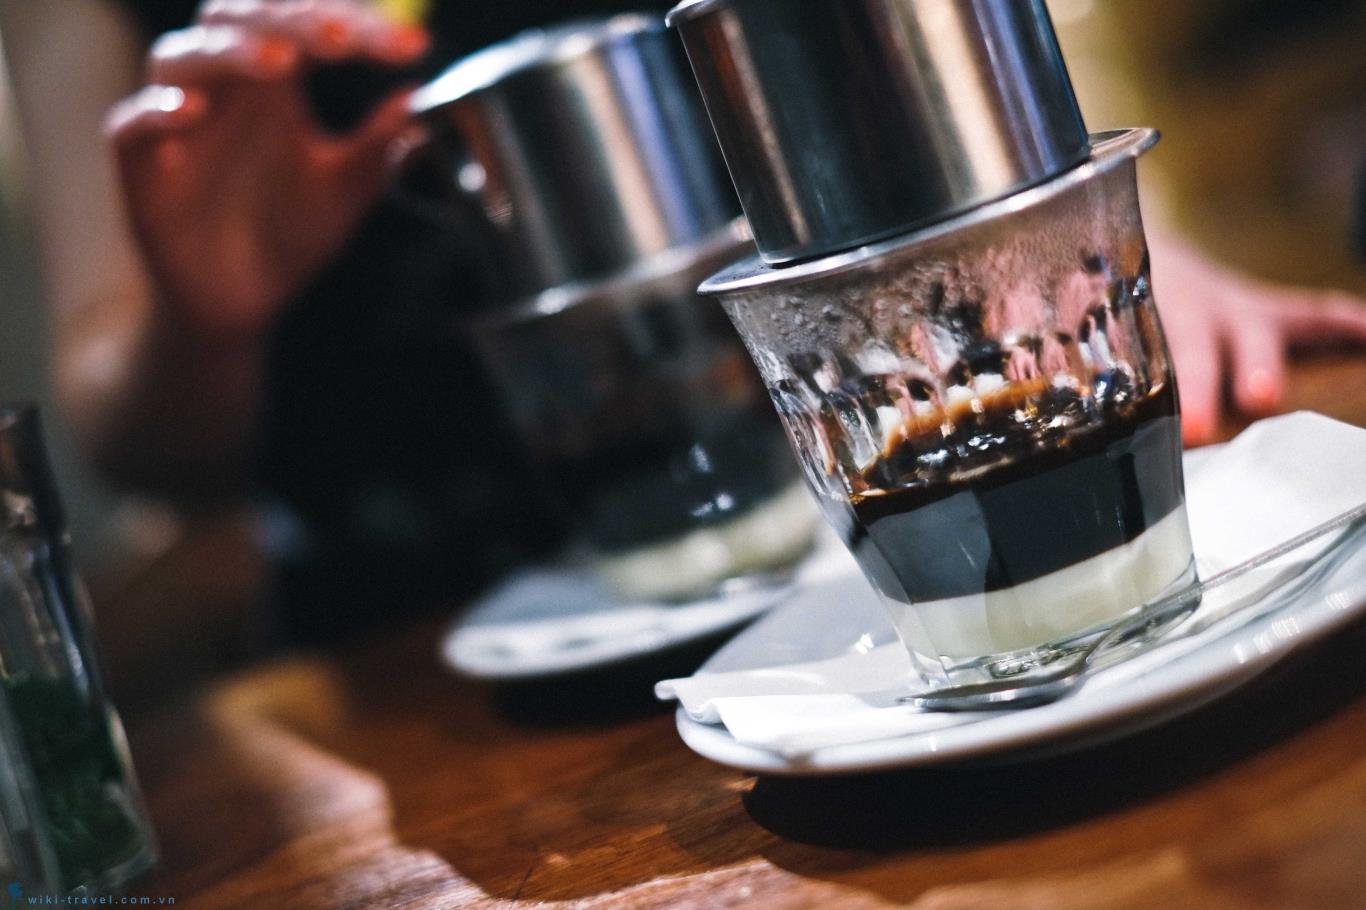 Nếu bạn là một người yêu thích cà phê, ly cà phê phin chắc chắn là một trong những lựa chọn tuyệt vời. Hãy xem hình ảnh để khám phá thiết kế tinh xảo và hương vị độc đáo của ly cà phê phin nhé.